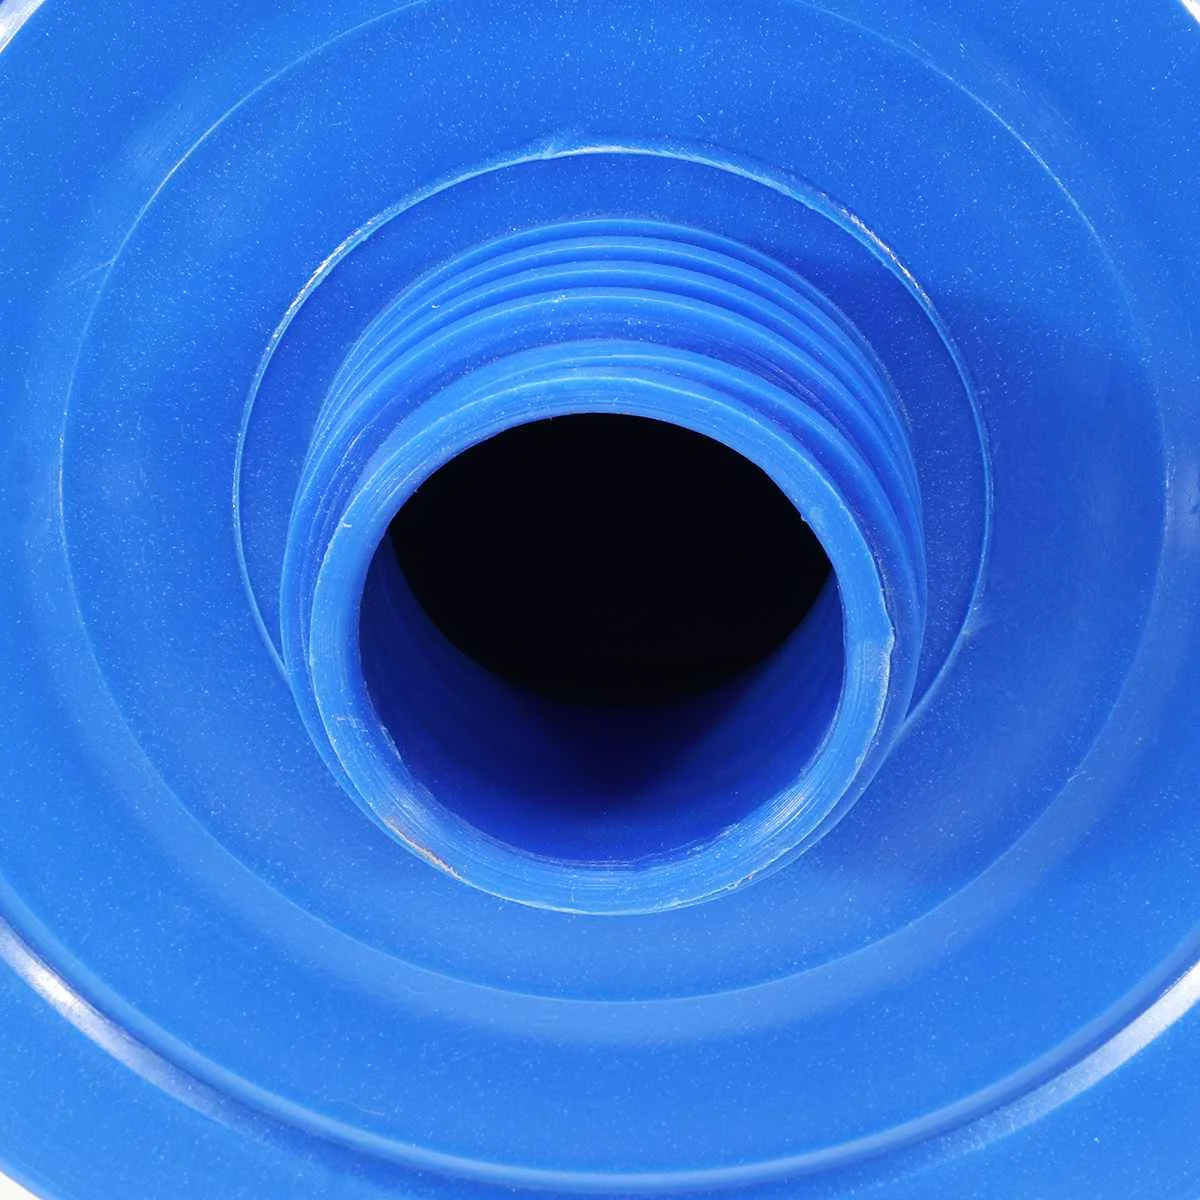 SGODDE спа-фильтр для бассейна сменный антибактериальный фильтр для воды очиститель аксессуары для бассейна 243x150 мм